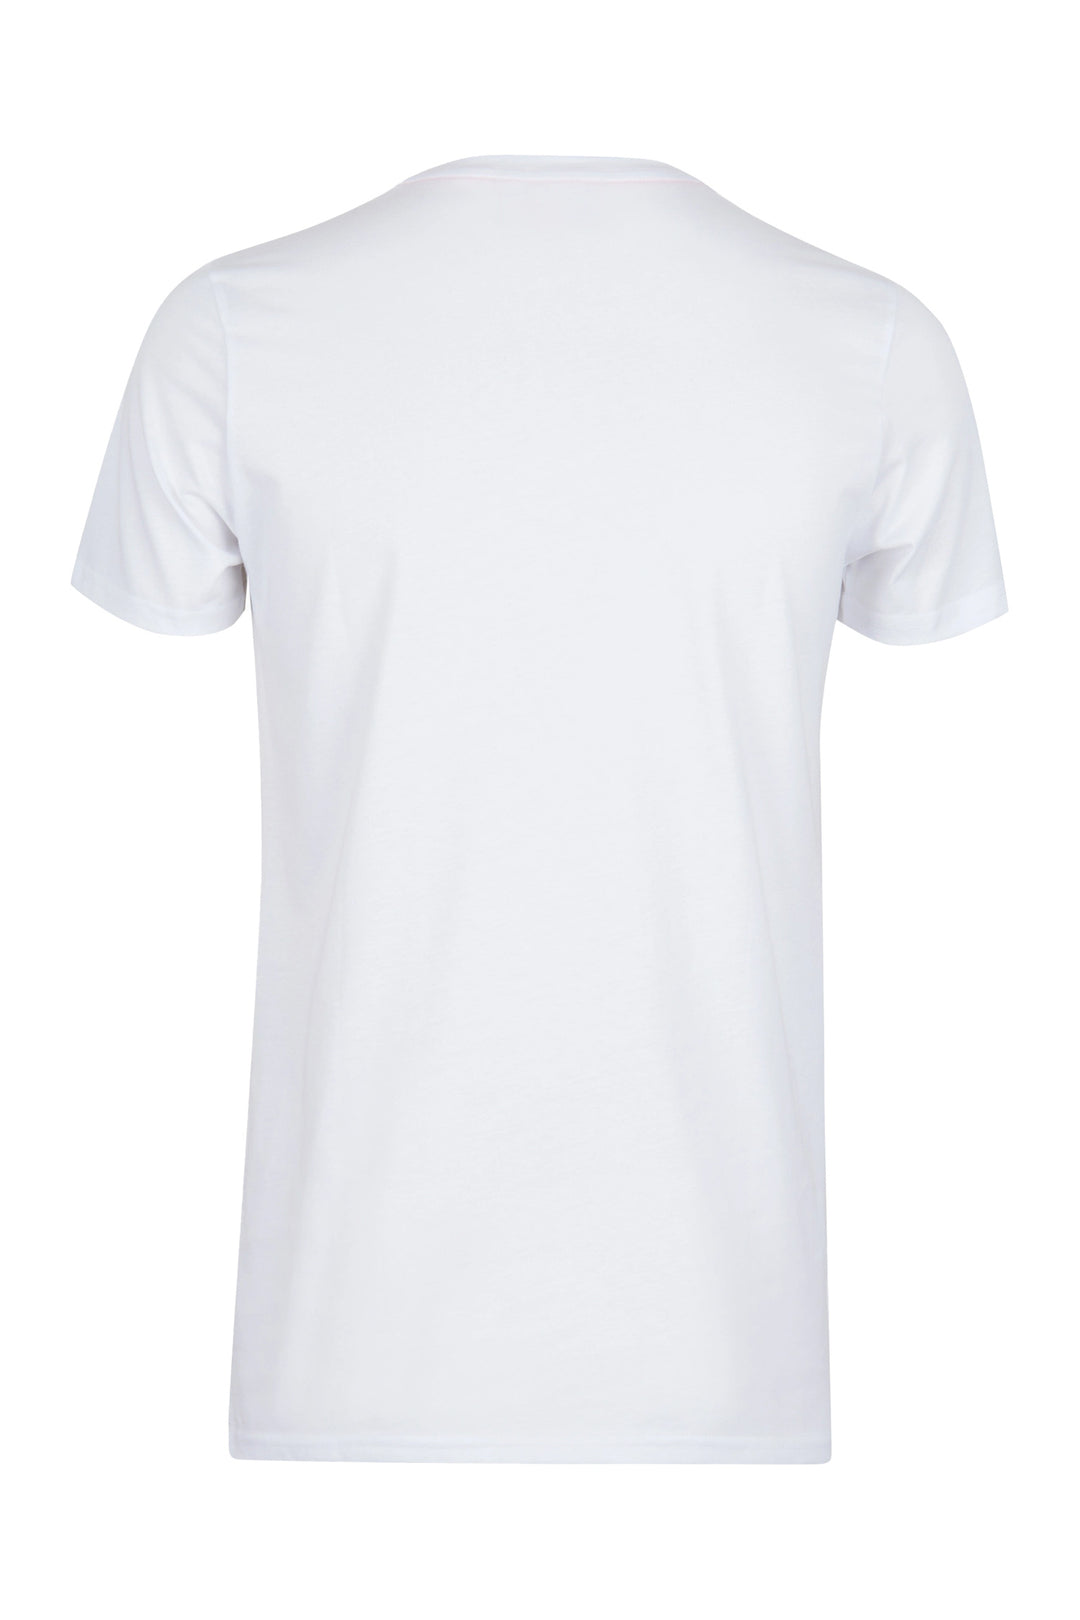 GALLO T-shirt cotone bianco tinta unita e taschino multicolor - Mancinelli 1954